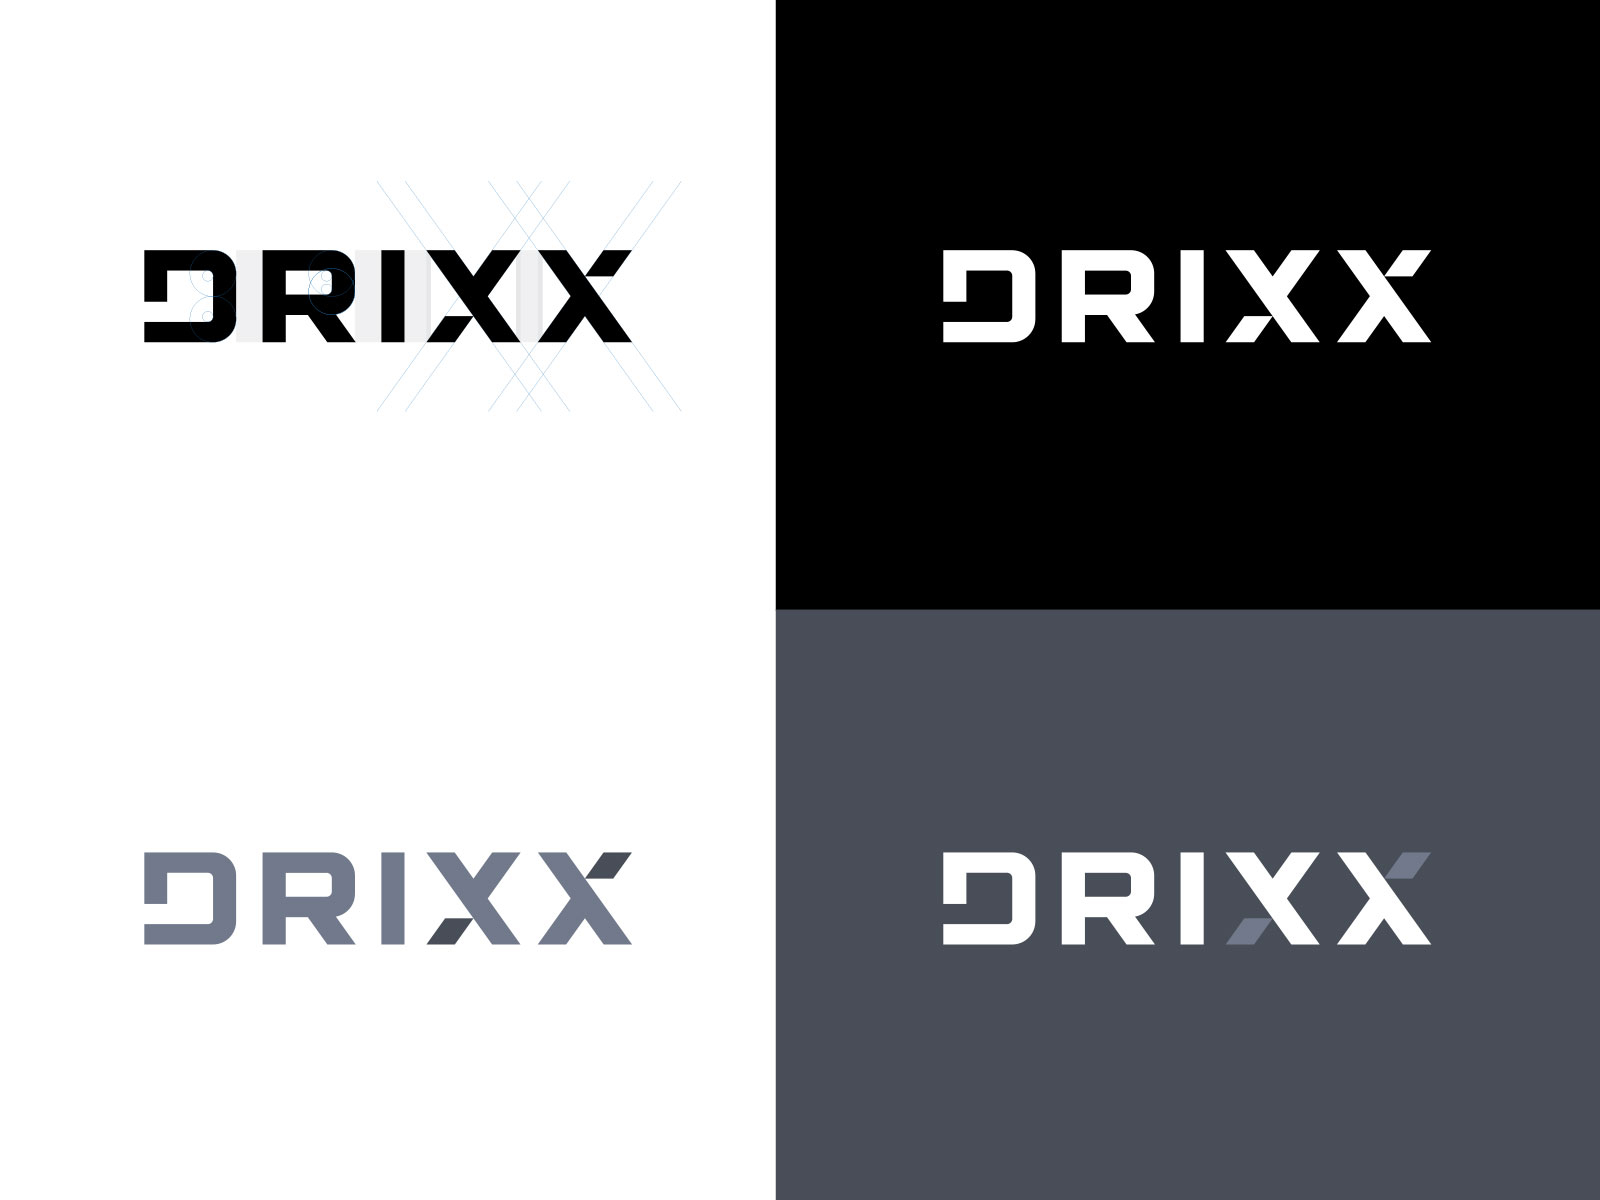 wordmark logos